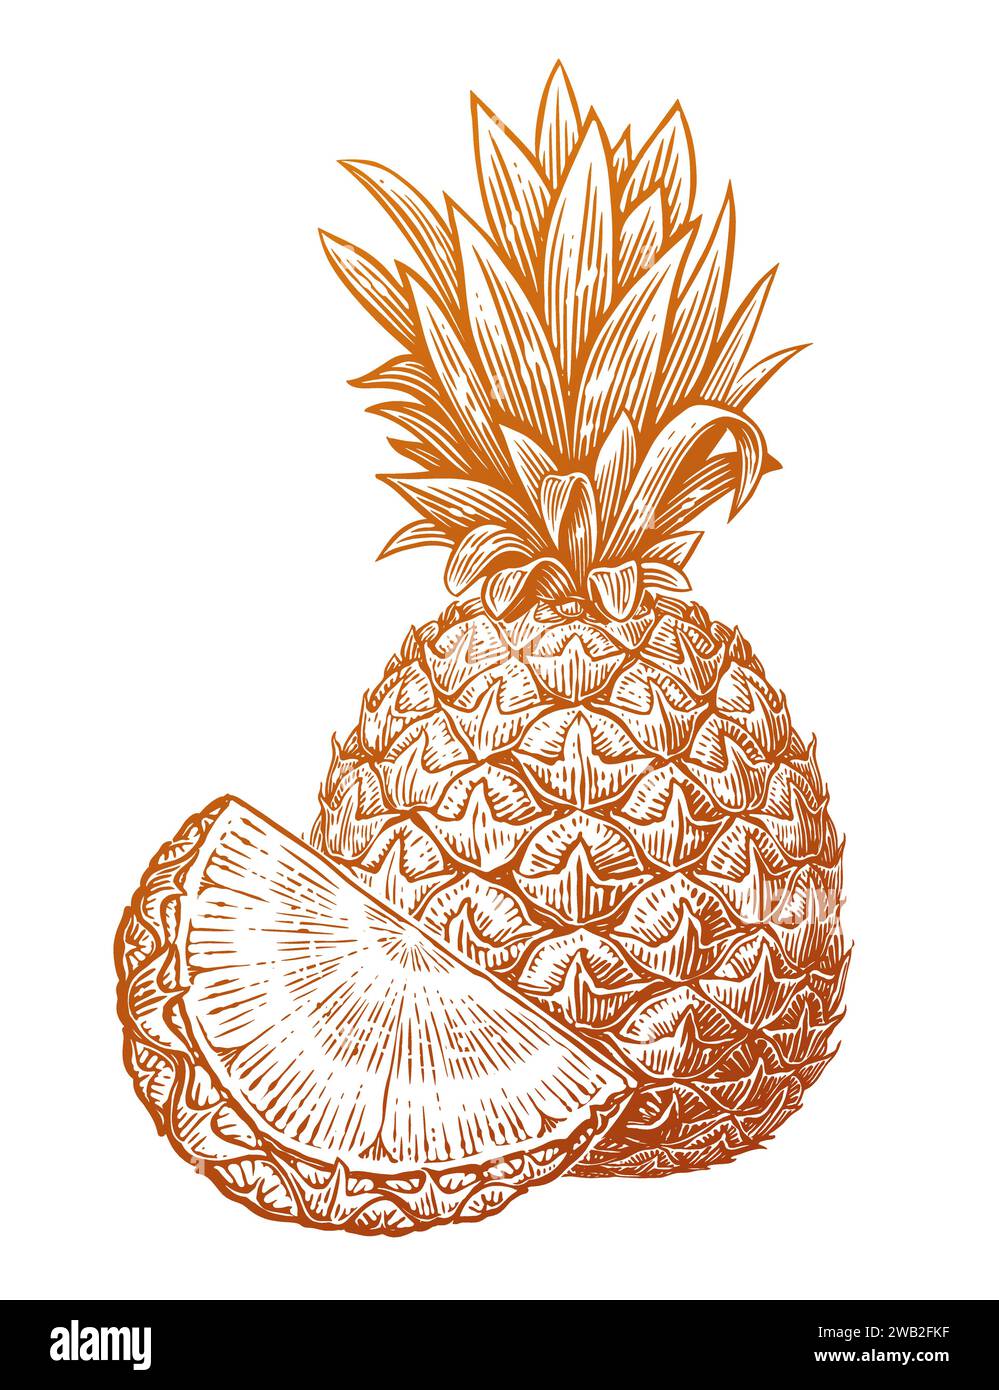 Ananas avec tranche, croquis dessiné à la main. Produits frais écologiques. Illustration vectorielle de fruits tropicaux Illustration de Vecteur